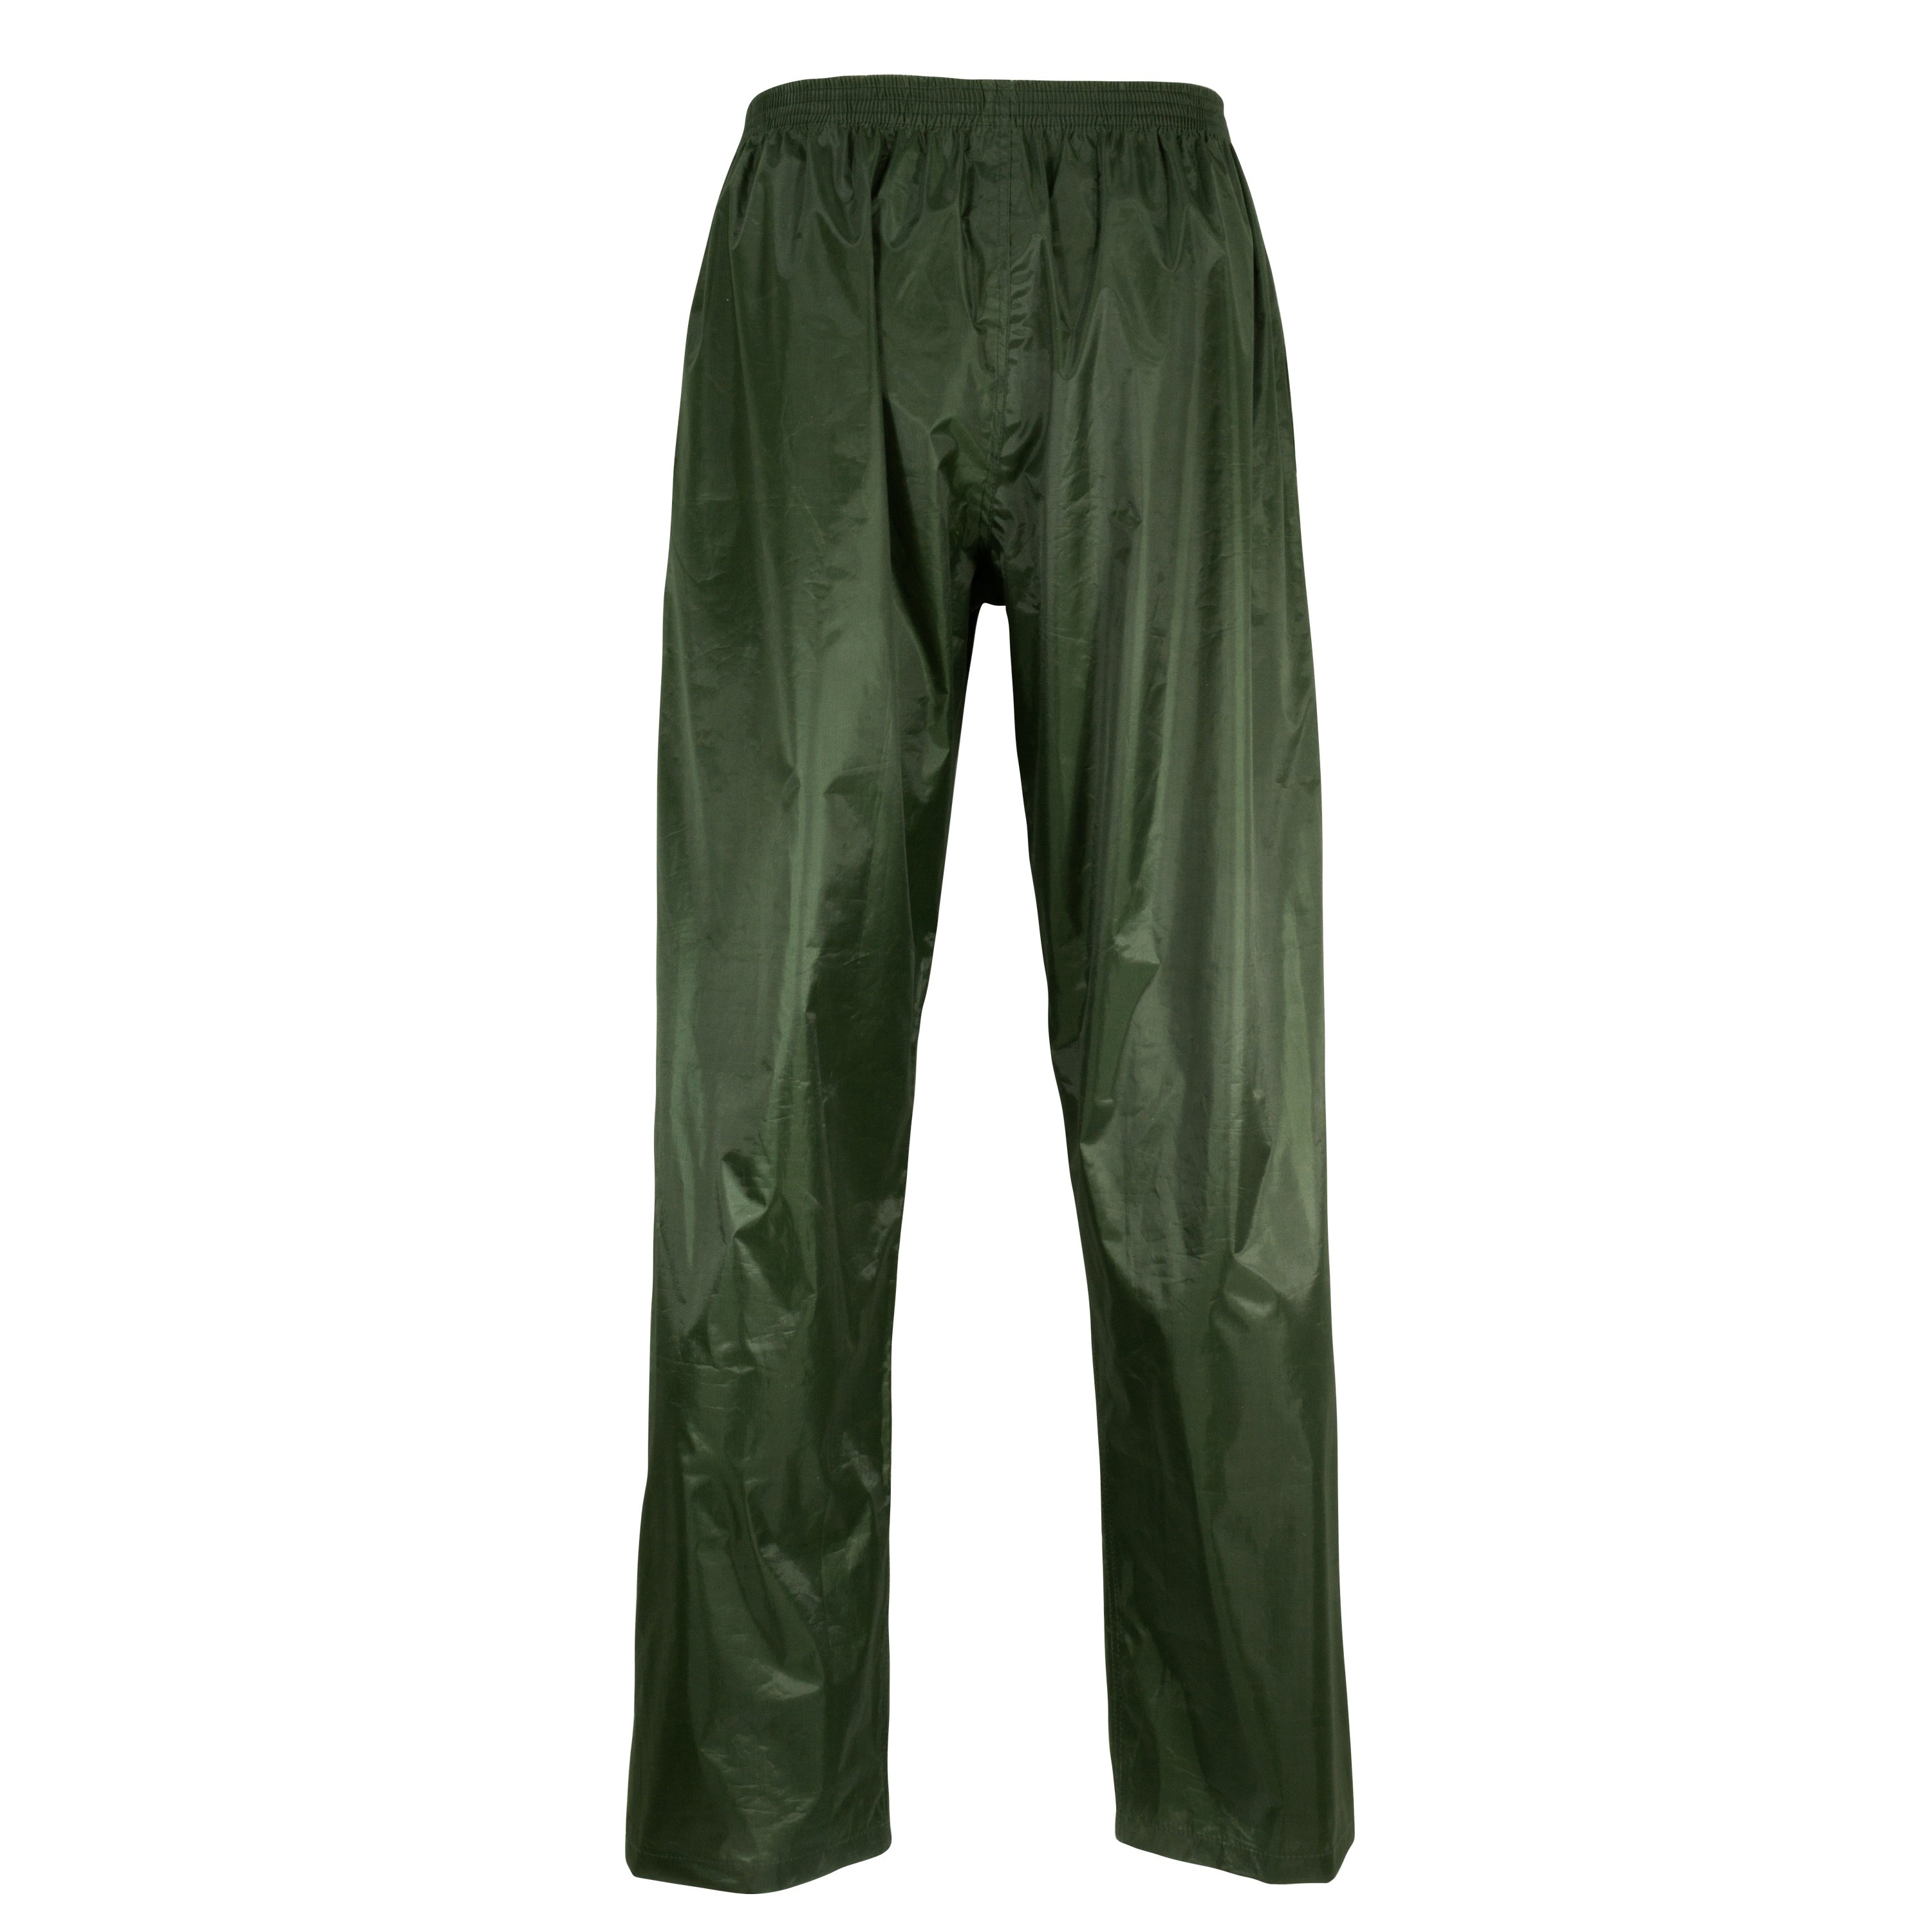 Ensemble imperméable de polyester 2 tons - Homme||2 tones polyester rain suit jacket and pants - Men’s